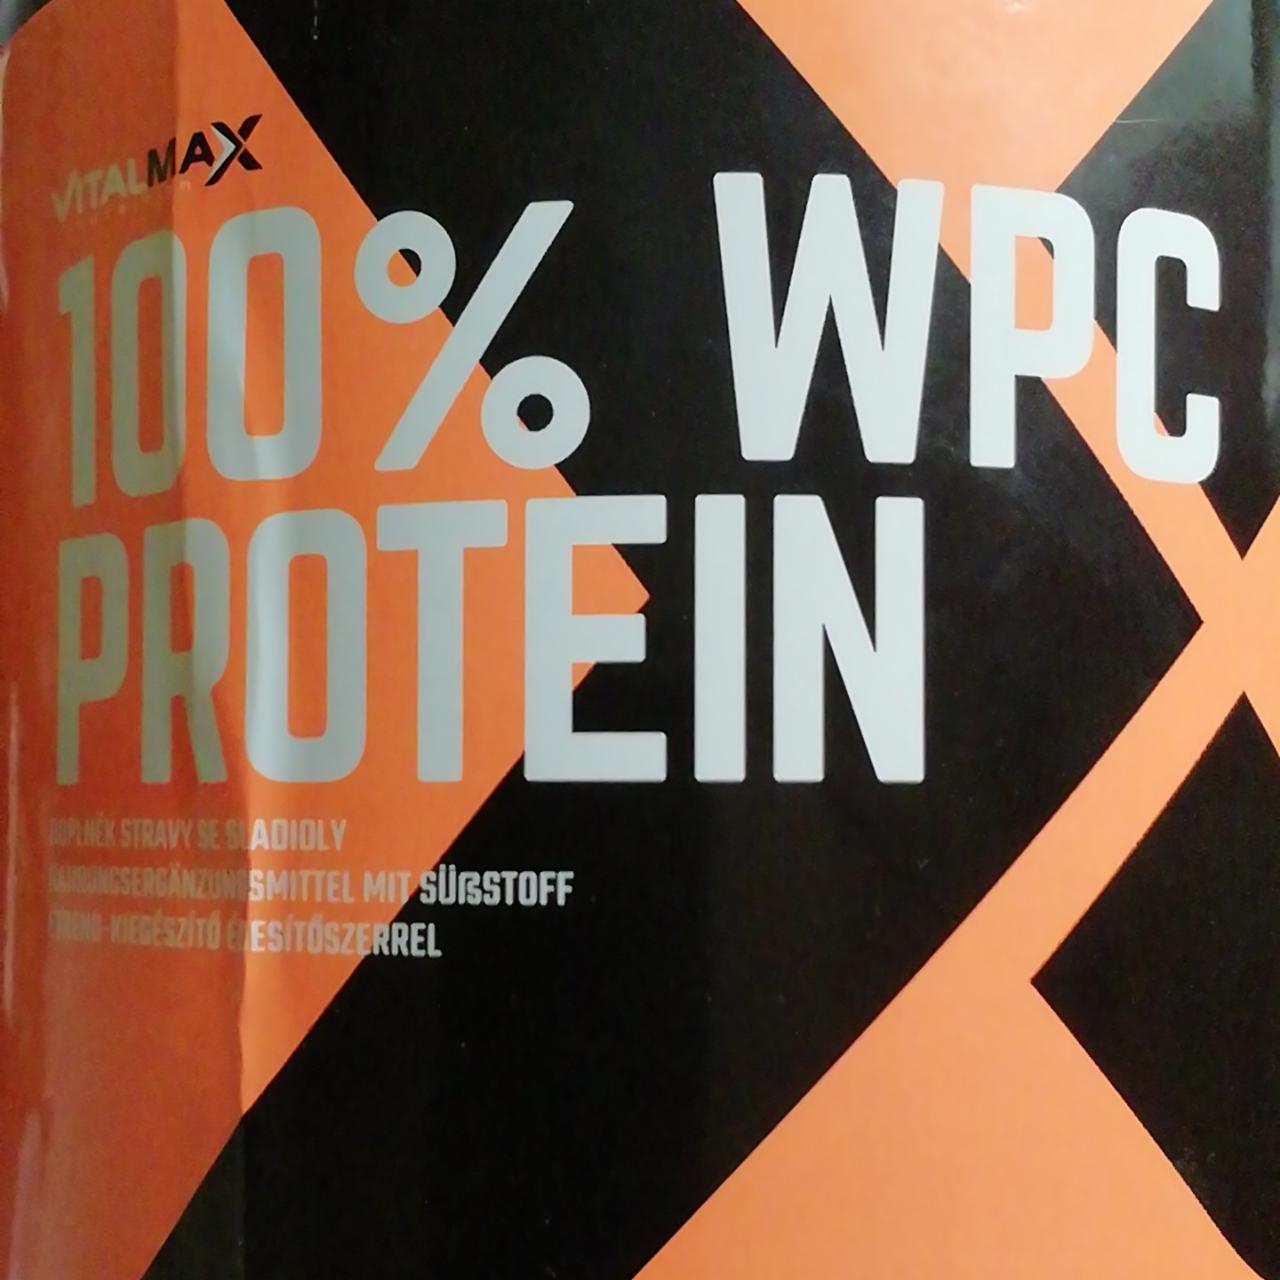 Fotografie - 100% WPC protein čokoláda VitalMAX